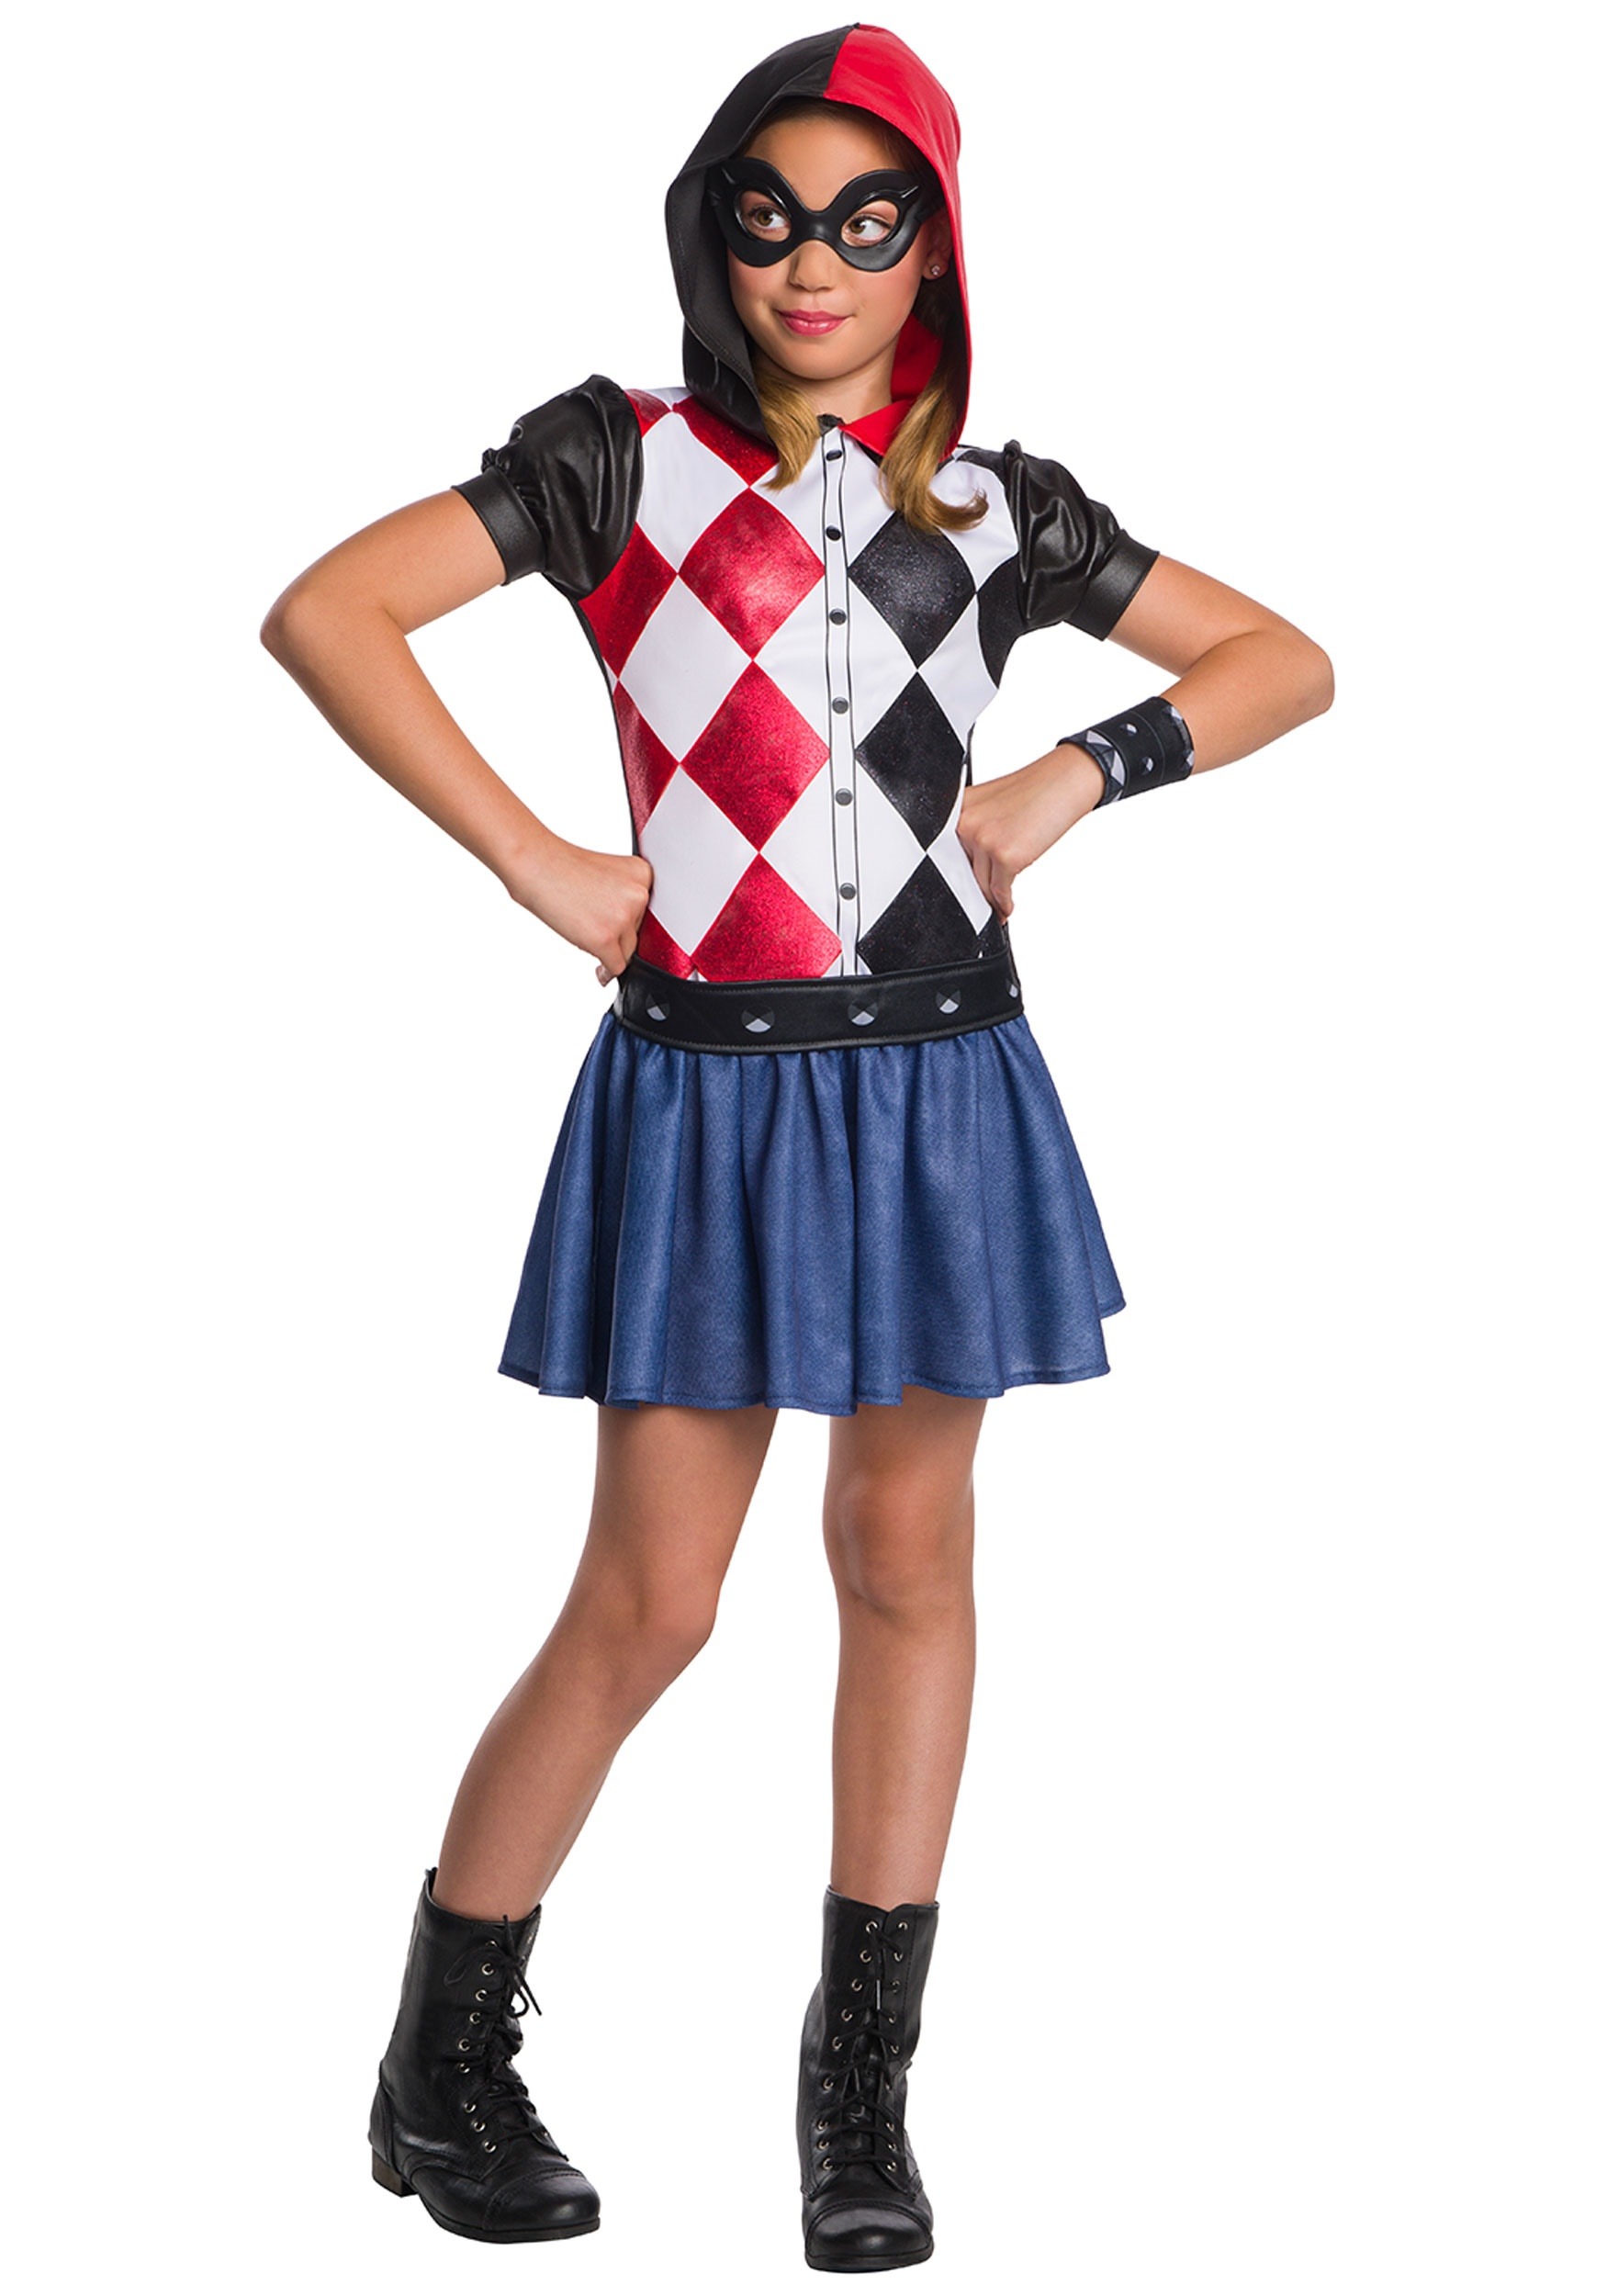 Harley Quinn Costume for Girls